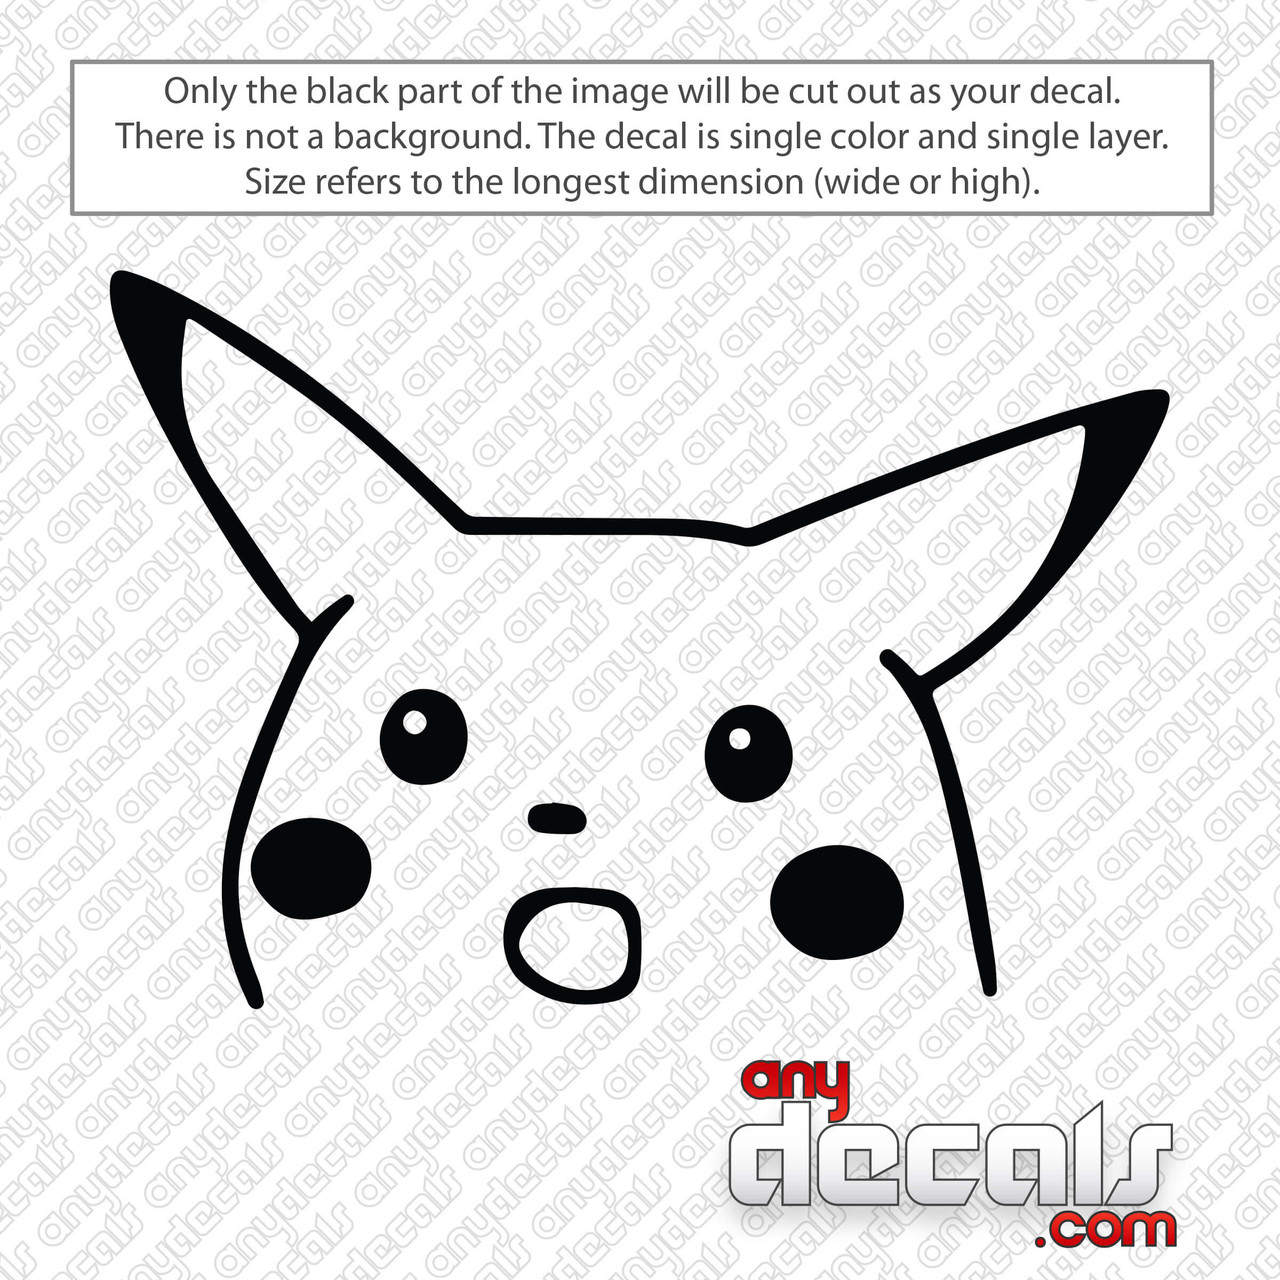 Surprised Pikachu Meme - Sticker Graphic - Decal Sticker Sticker